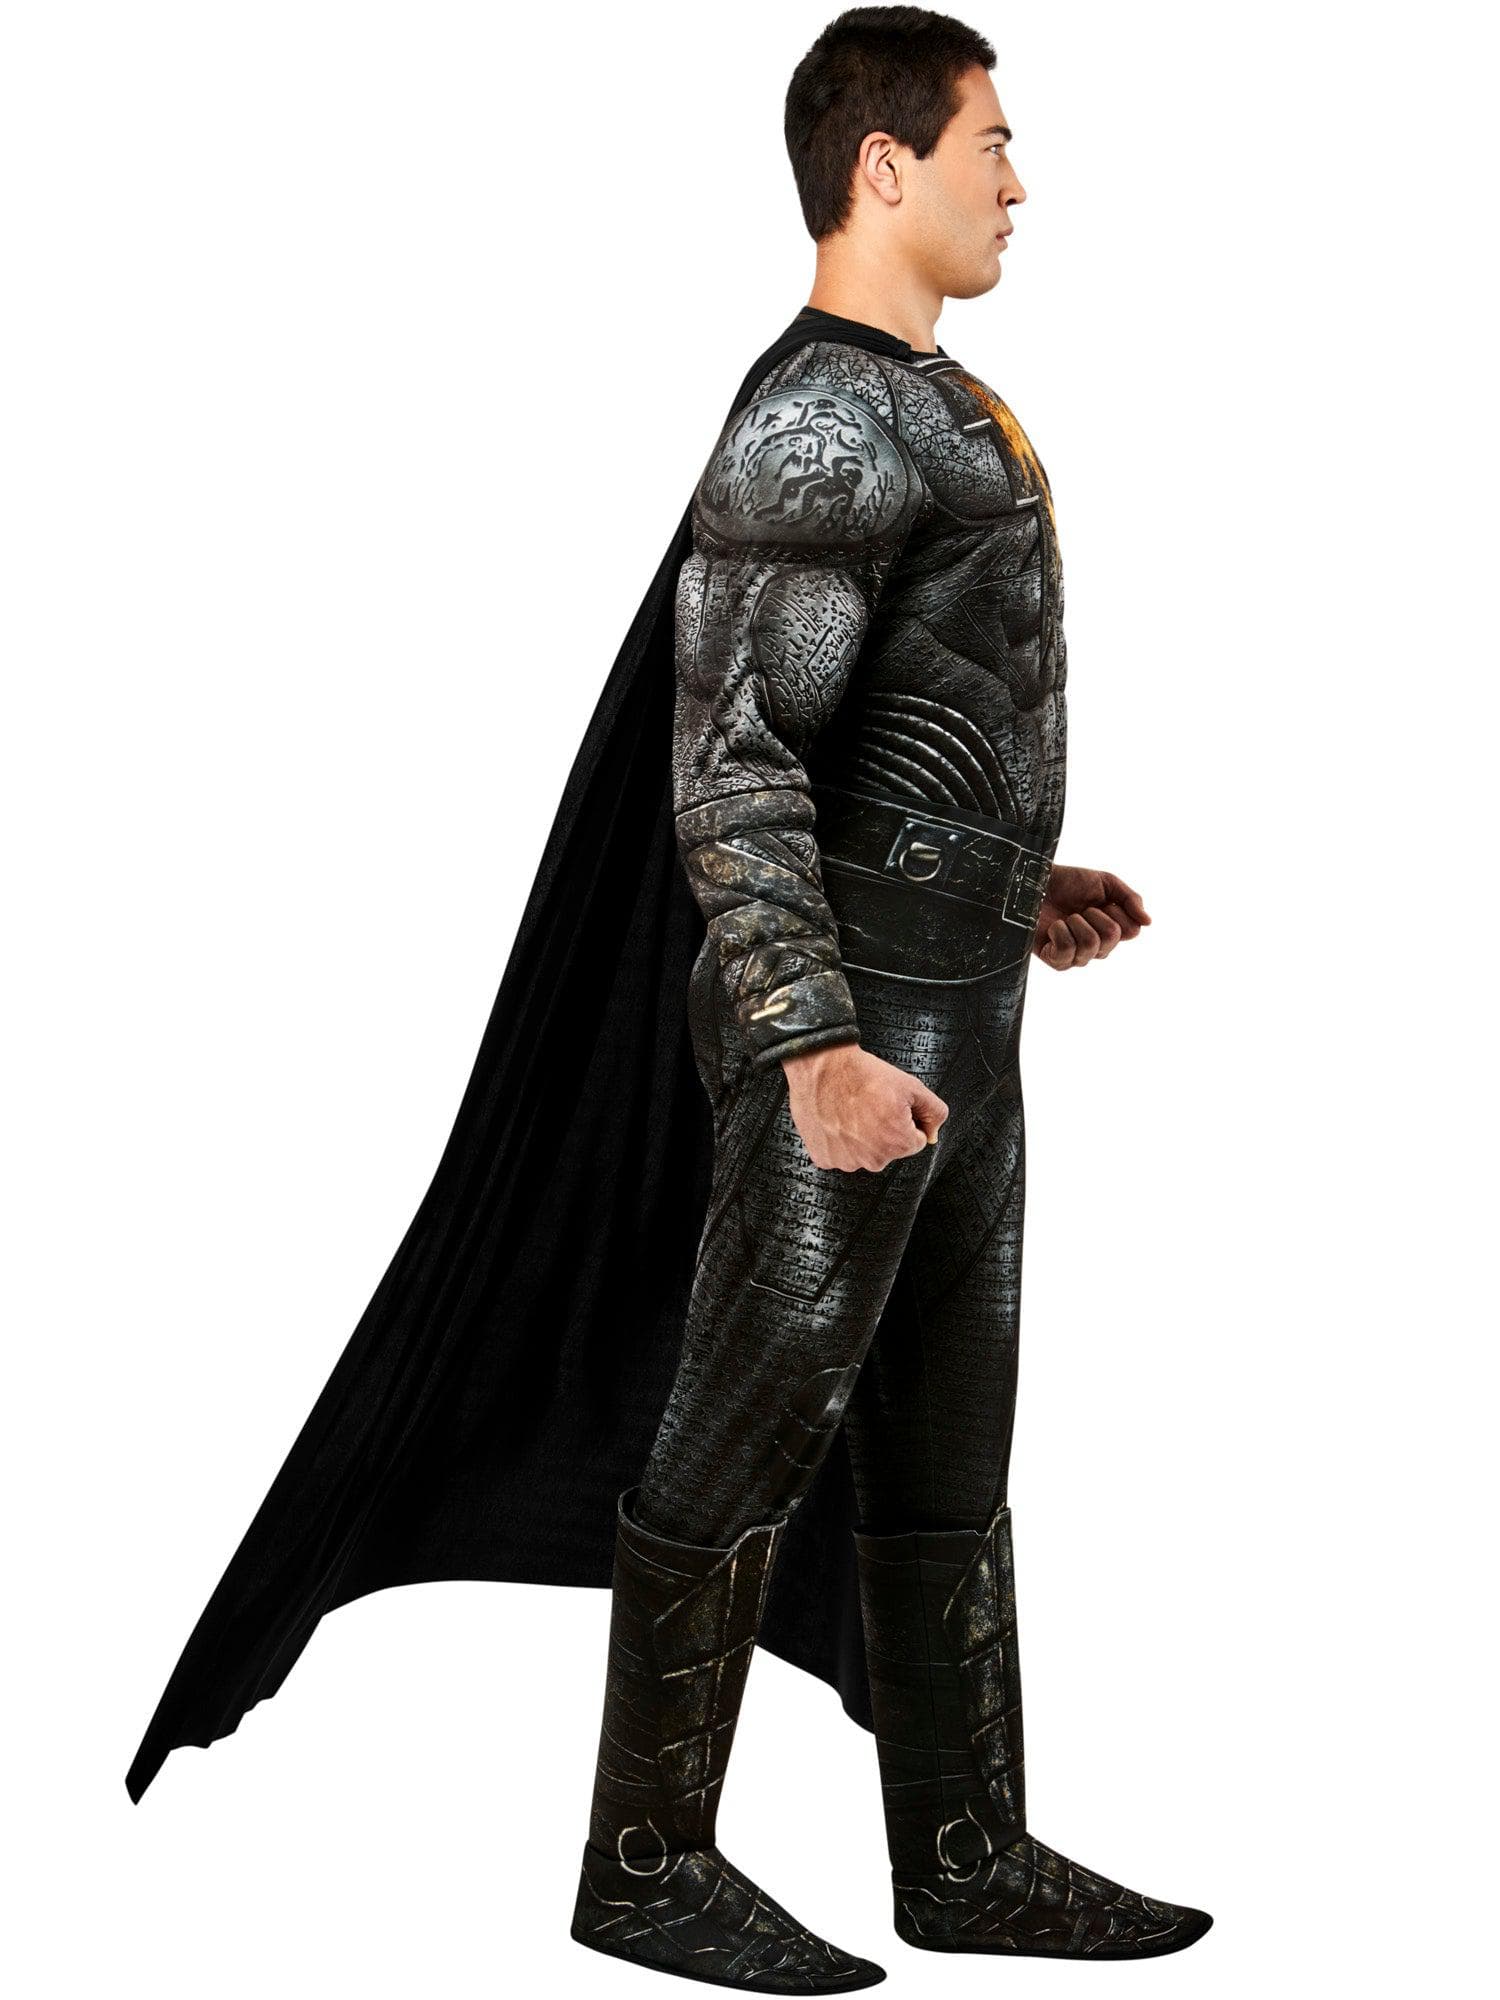 Men's DC Comics Black Adam Costume - Deluxe - costumes.com